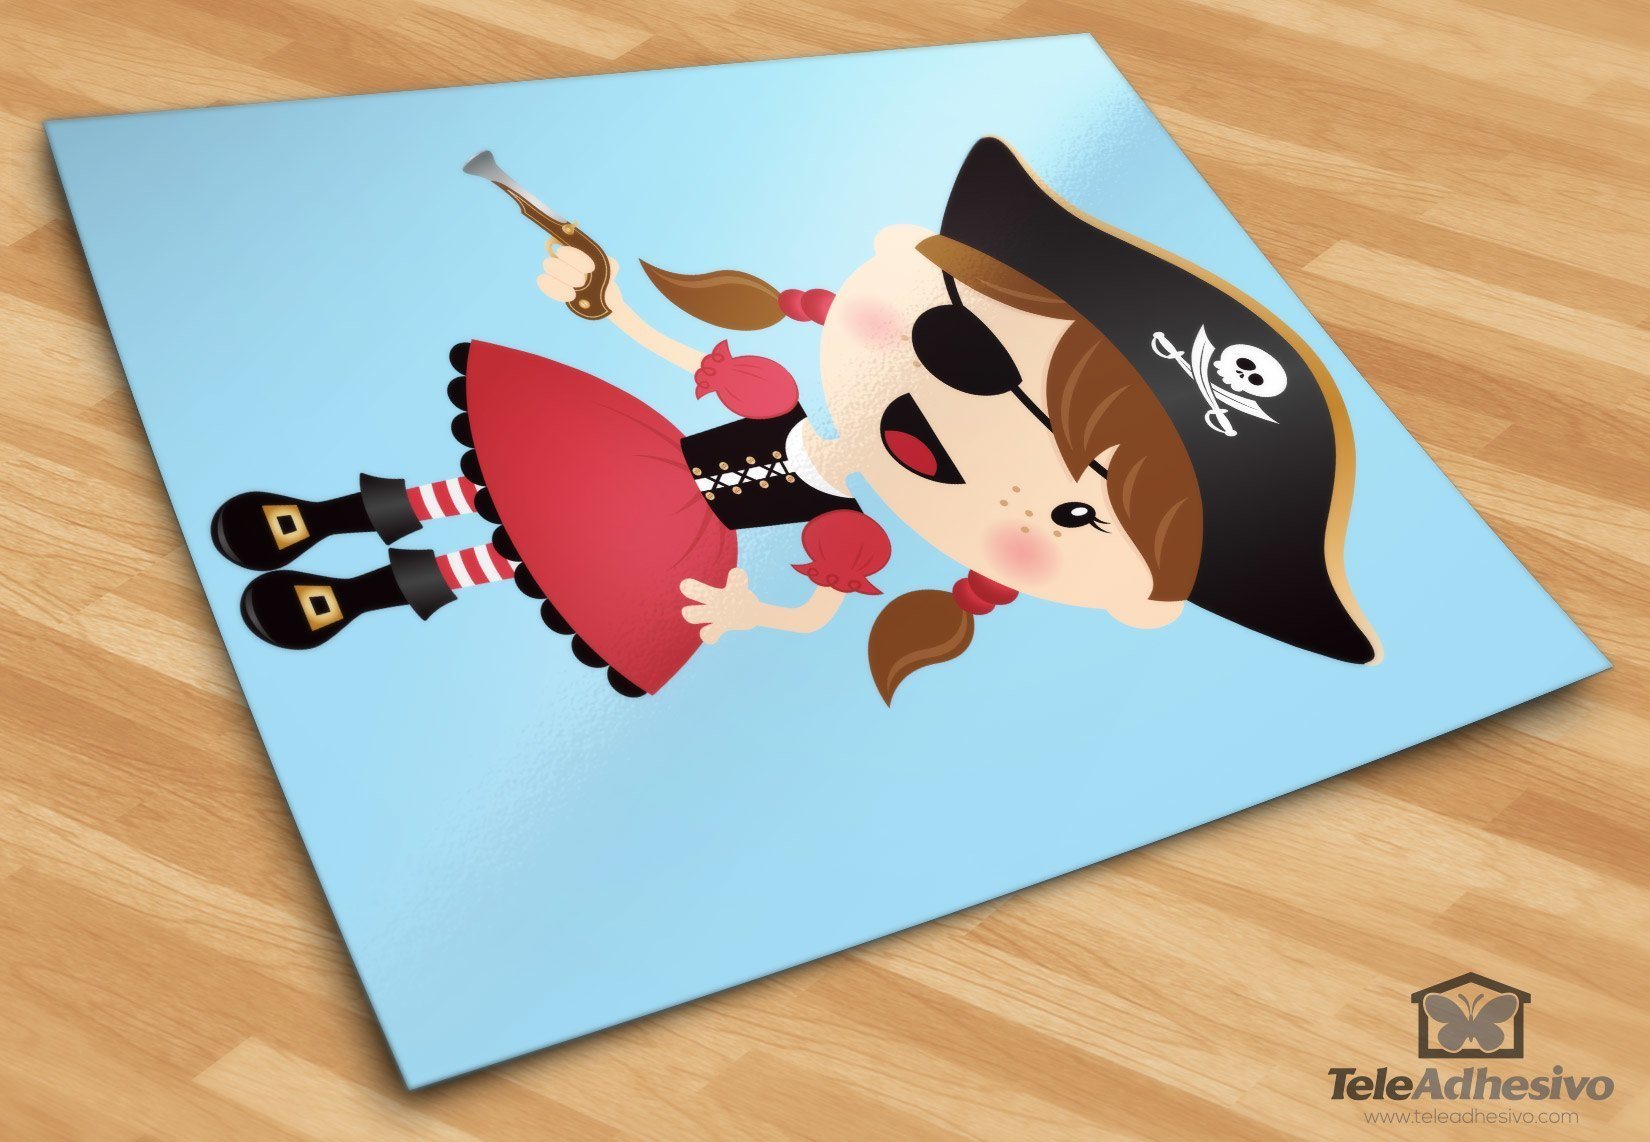 Vinilos Infantiles: La pequeña pirata trabuco